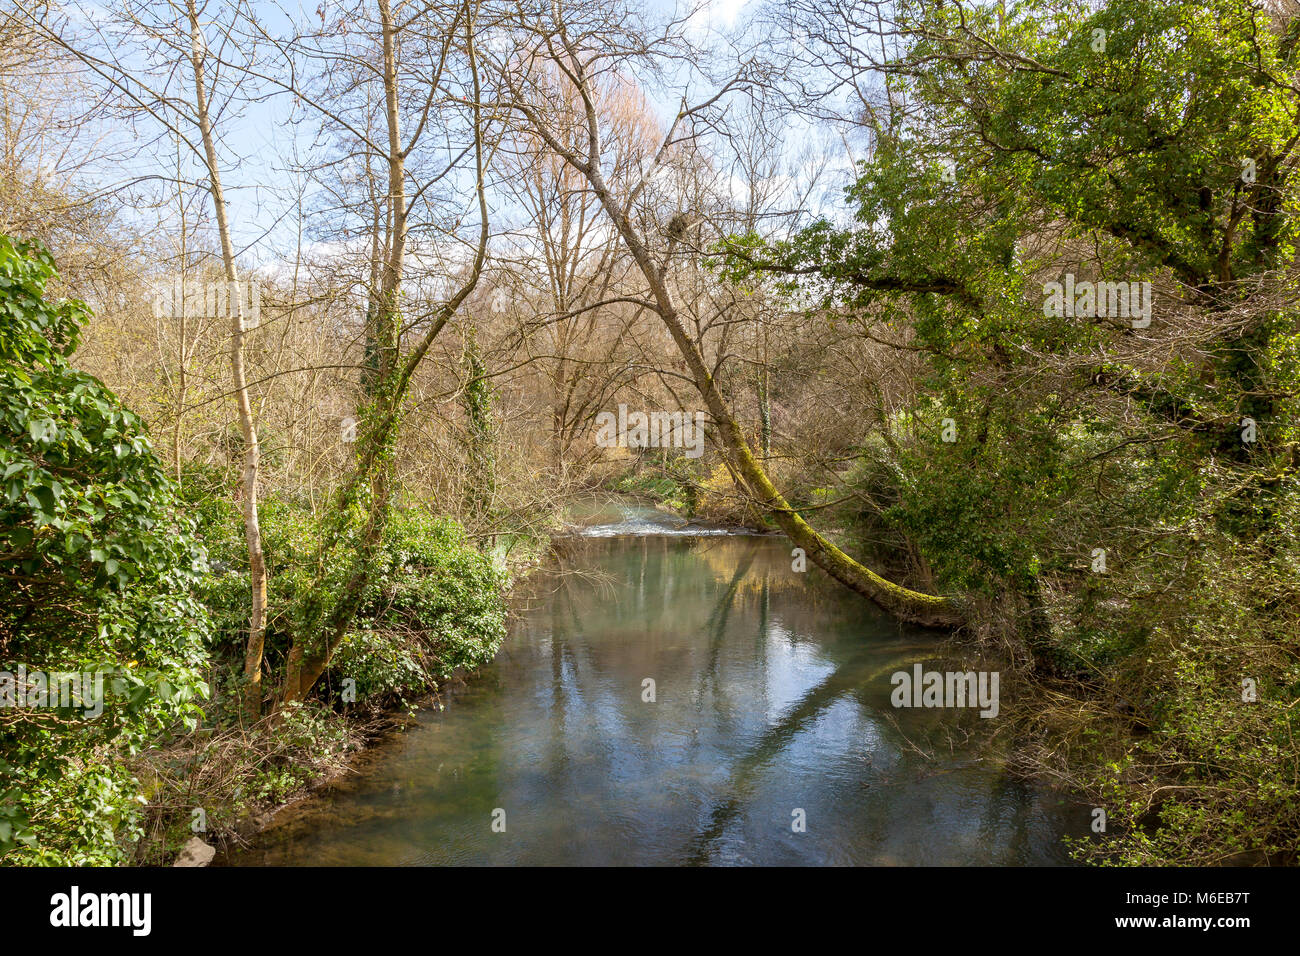 La direction générale de la rivière Tetbury Avon serpente Malmesbury, offrant une belle vue, Wiltshire, Royaume-Uni Banque D'Images